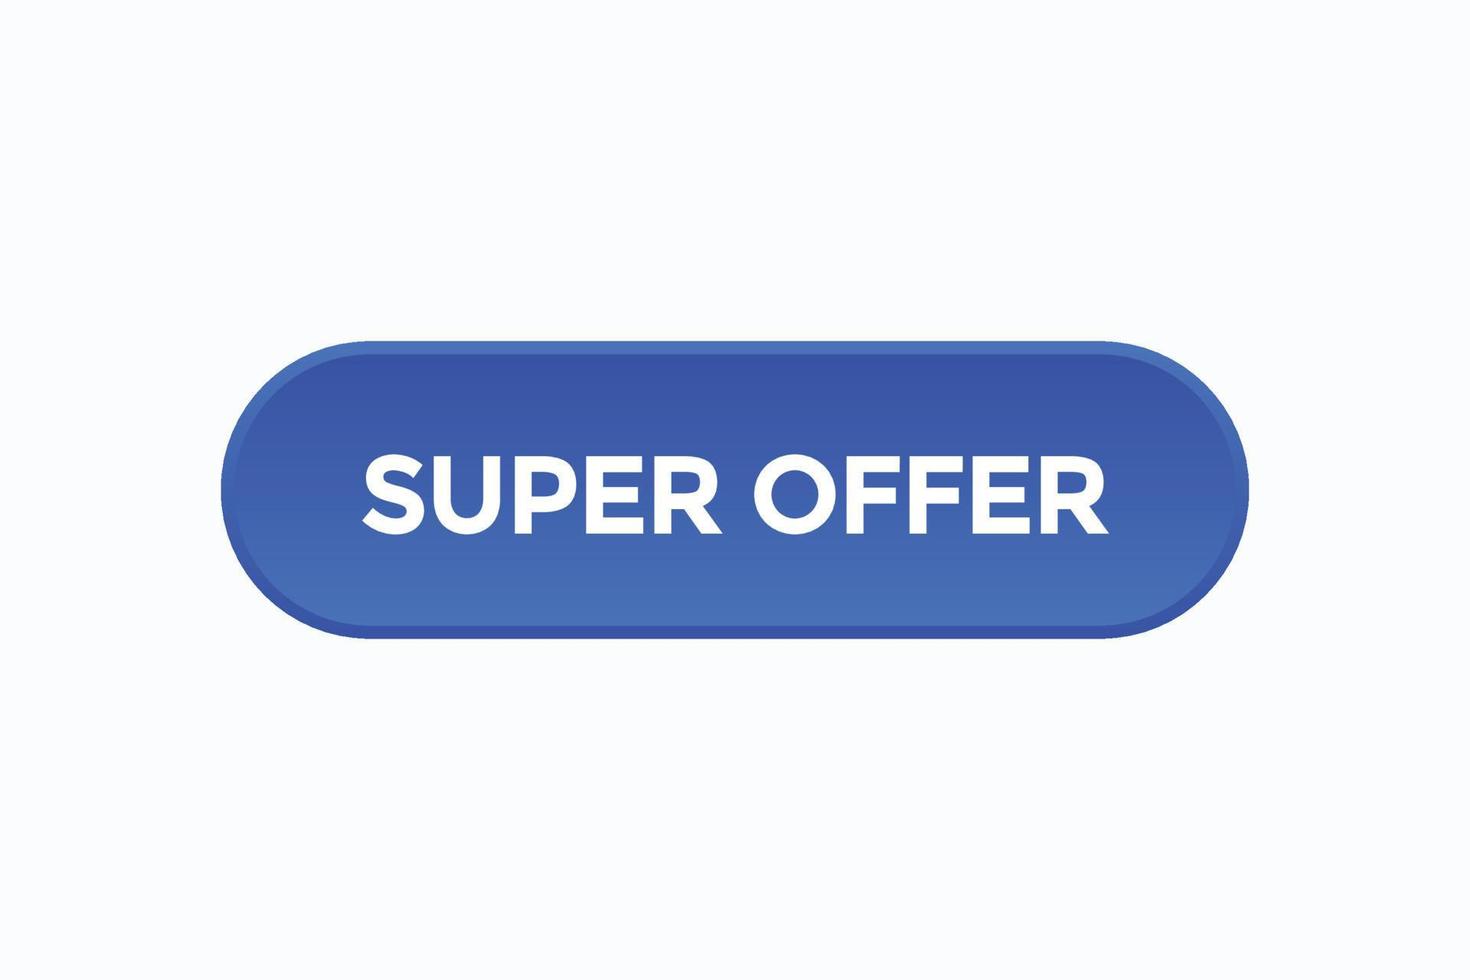 super offer start doing button vectors.sign label speech bubble super offer vector